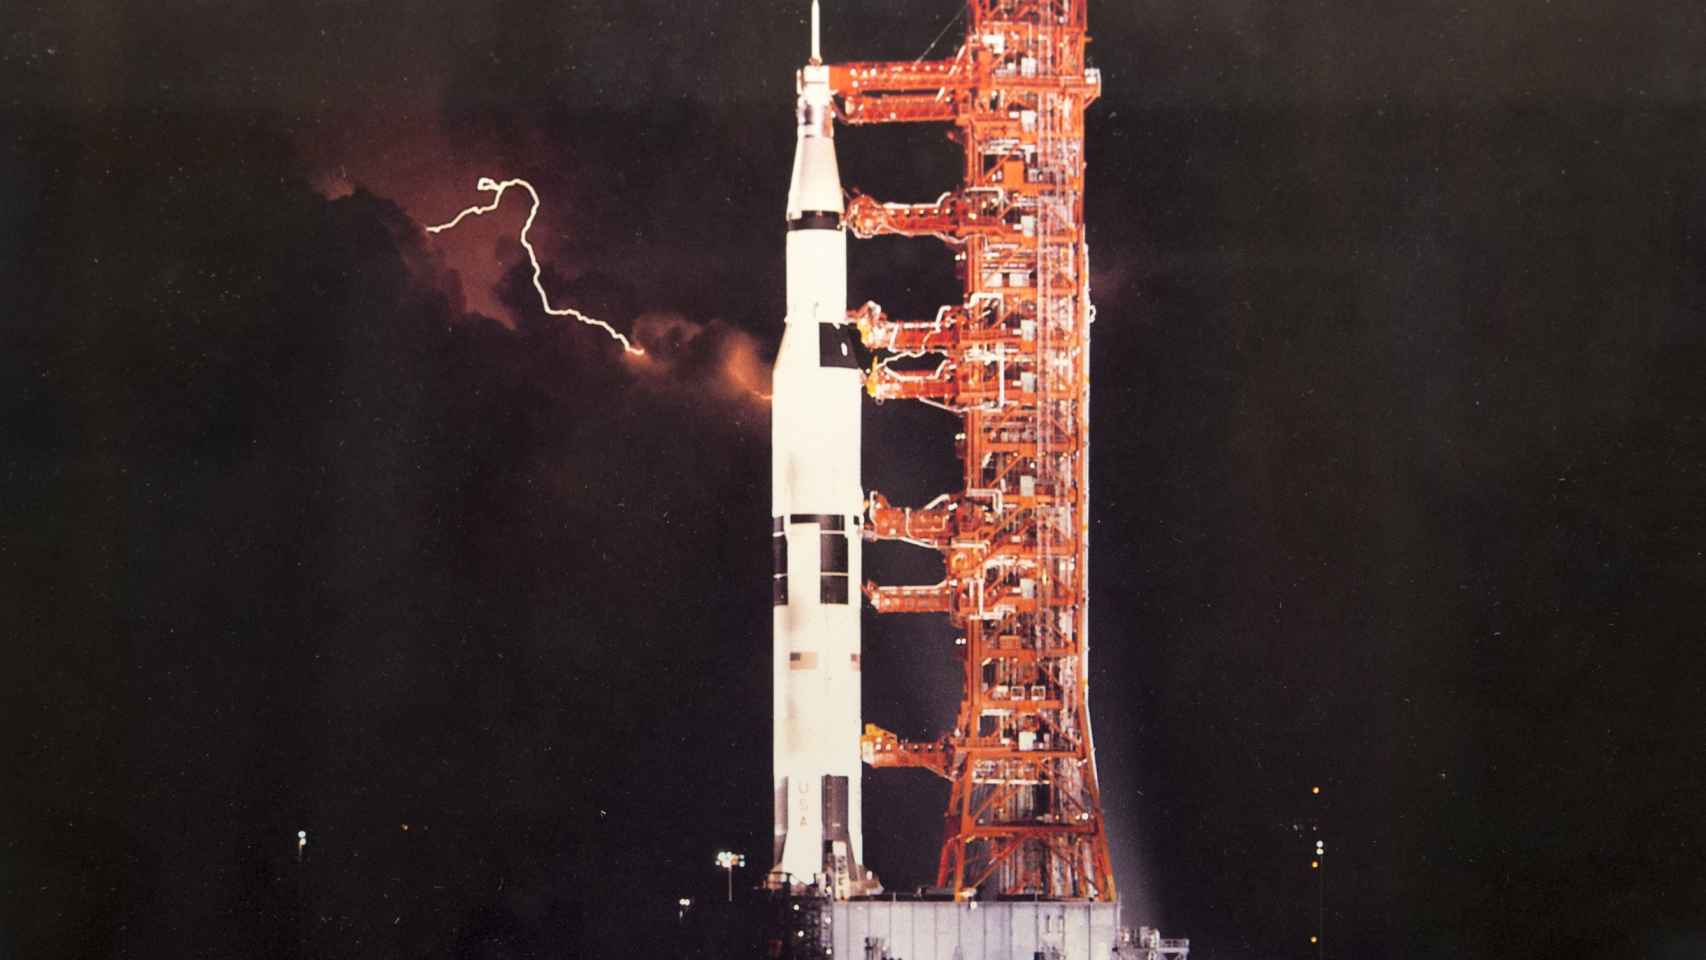 El gigantesco cohete Saturno V impulsaba los módulos lunares Apolo